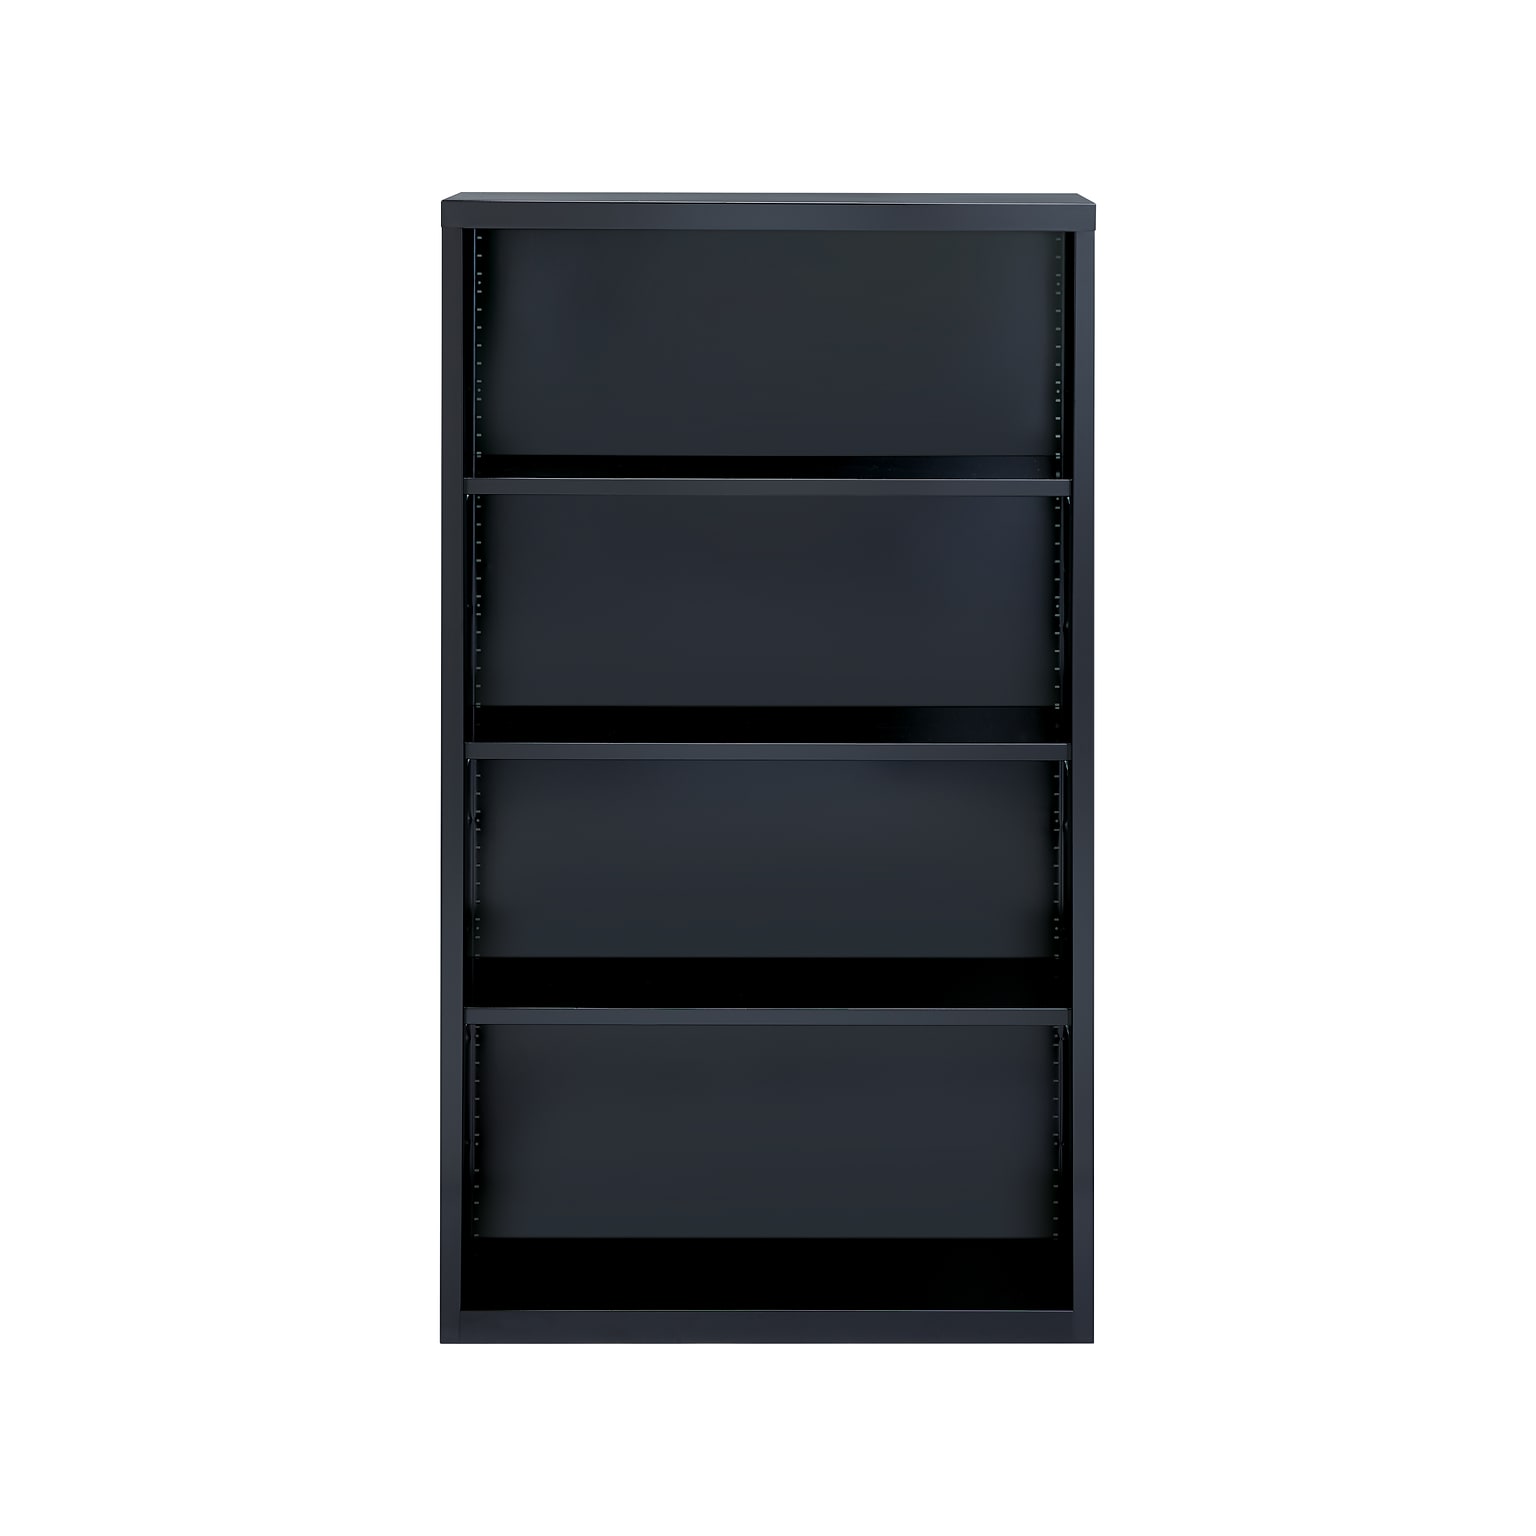 Hirsh HL8000 Series 60H 4-Shelf Bookcase with Adjustable Shelves, Black Steel (21993)